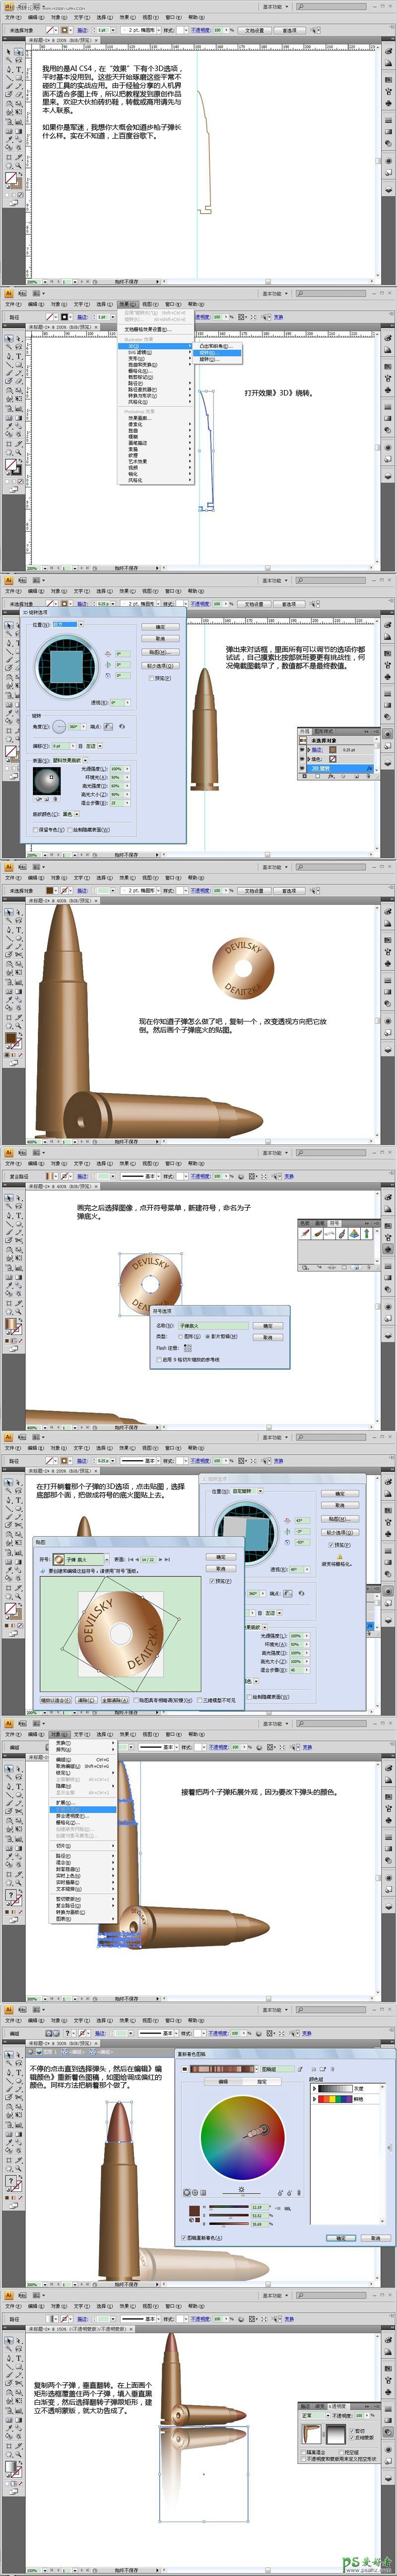 利用Illustrator软件中的3D功能绘制逼真的子弹头,子弹失量图制作